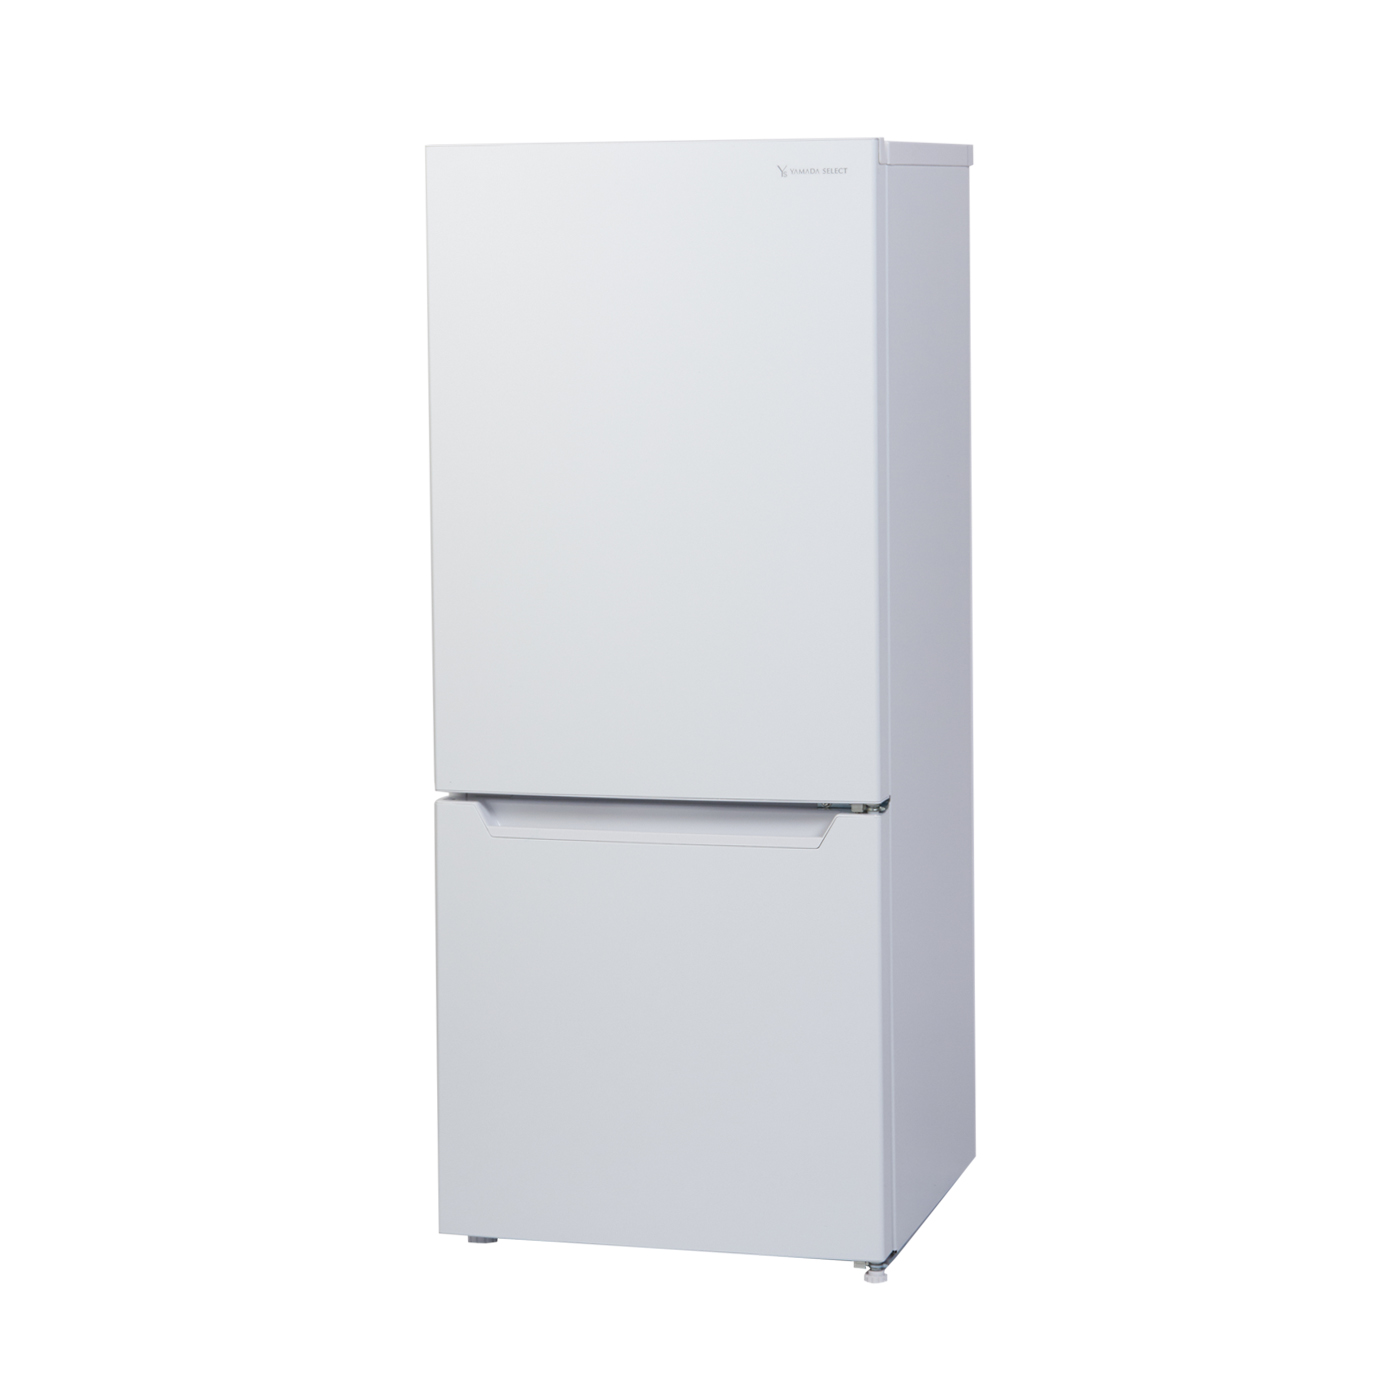 2023年度版ハイアール小型冷蔵庫 - 冷蔵庫